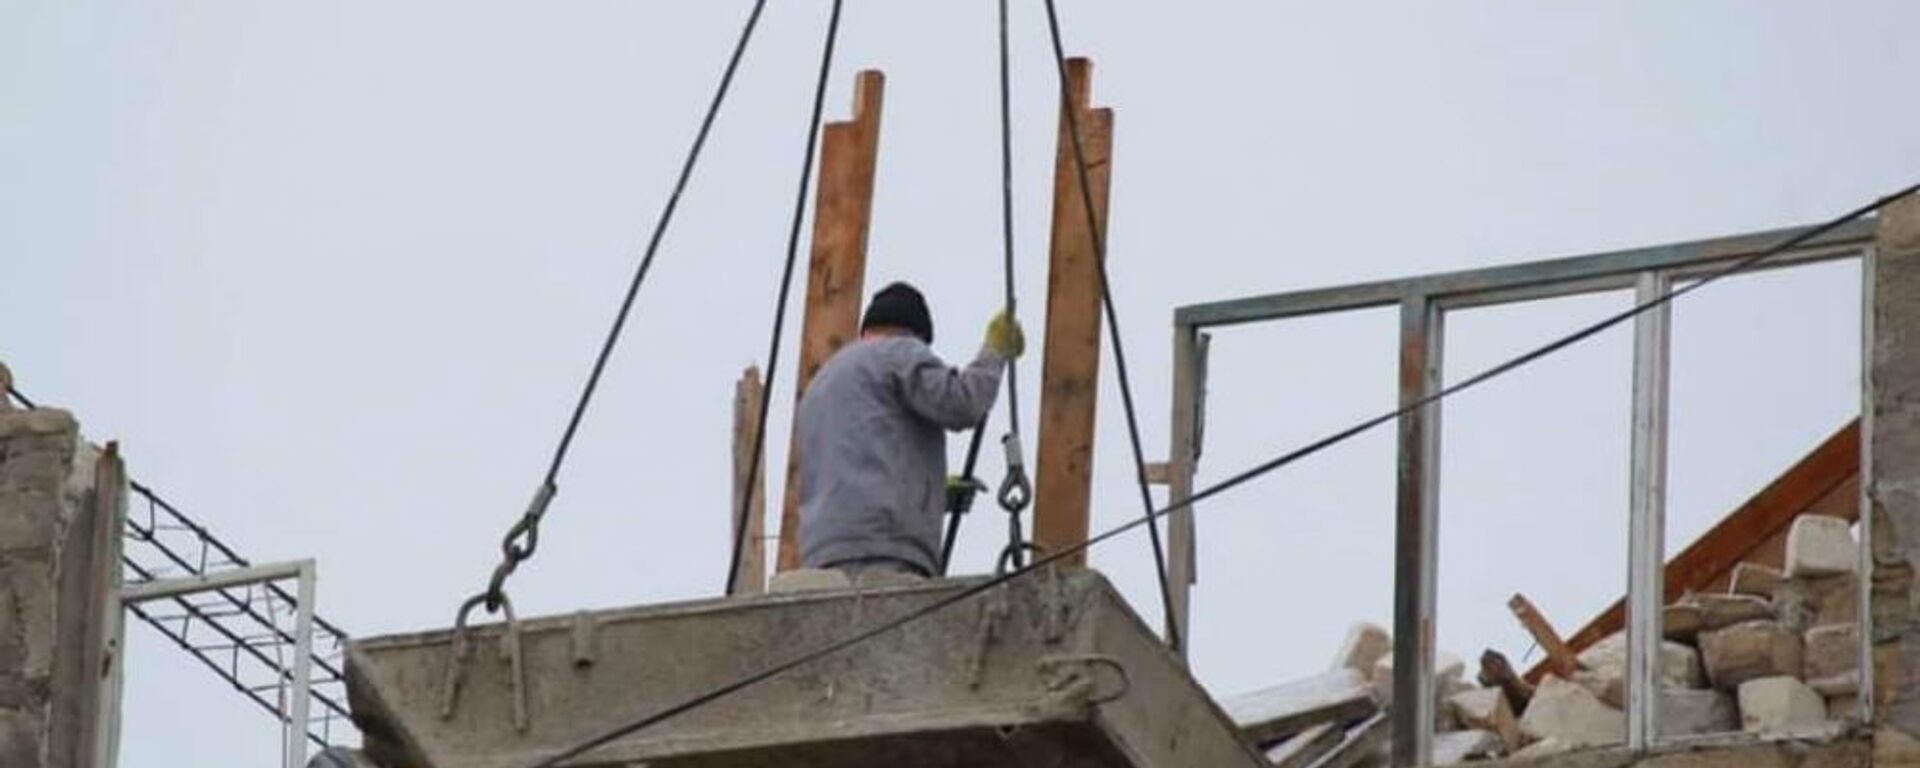 Ремонтные работы по восстановлению гражданских объектов после войны (9 января 3032). Карабах - Sputnik Армения, 1920, 29.07.2021